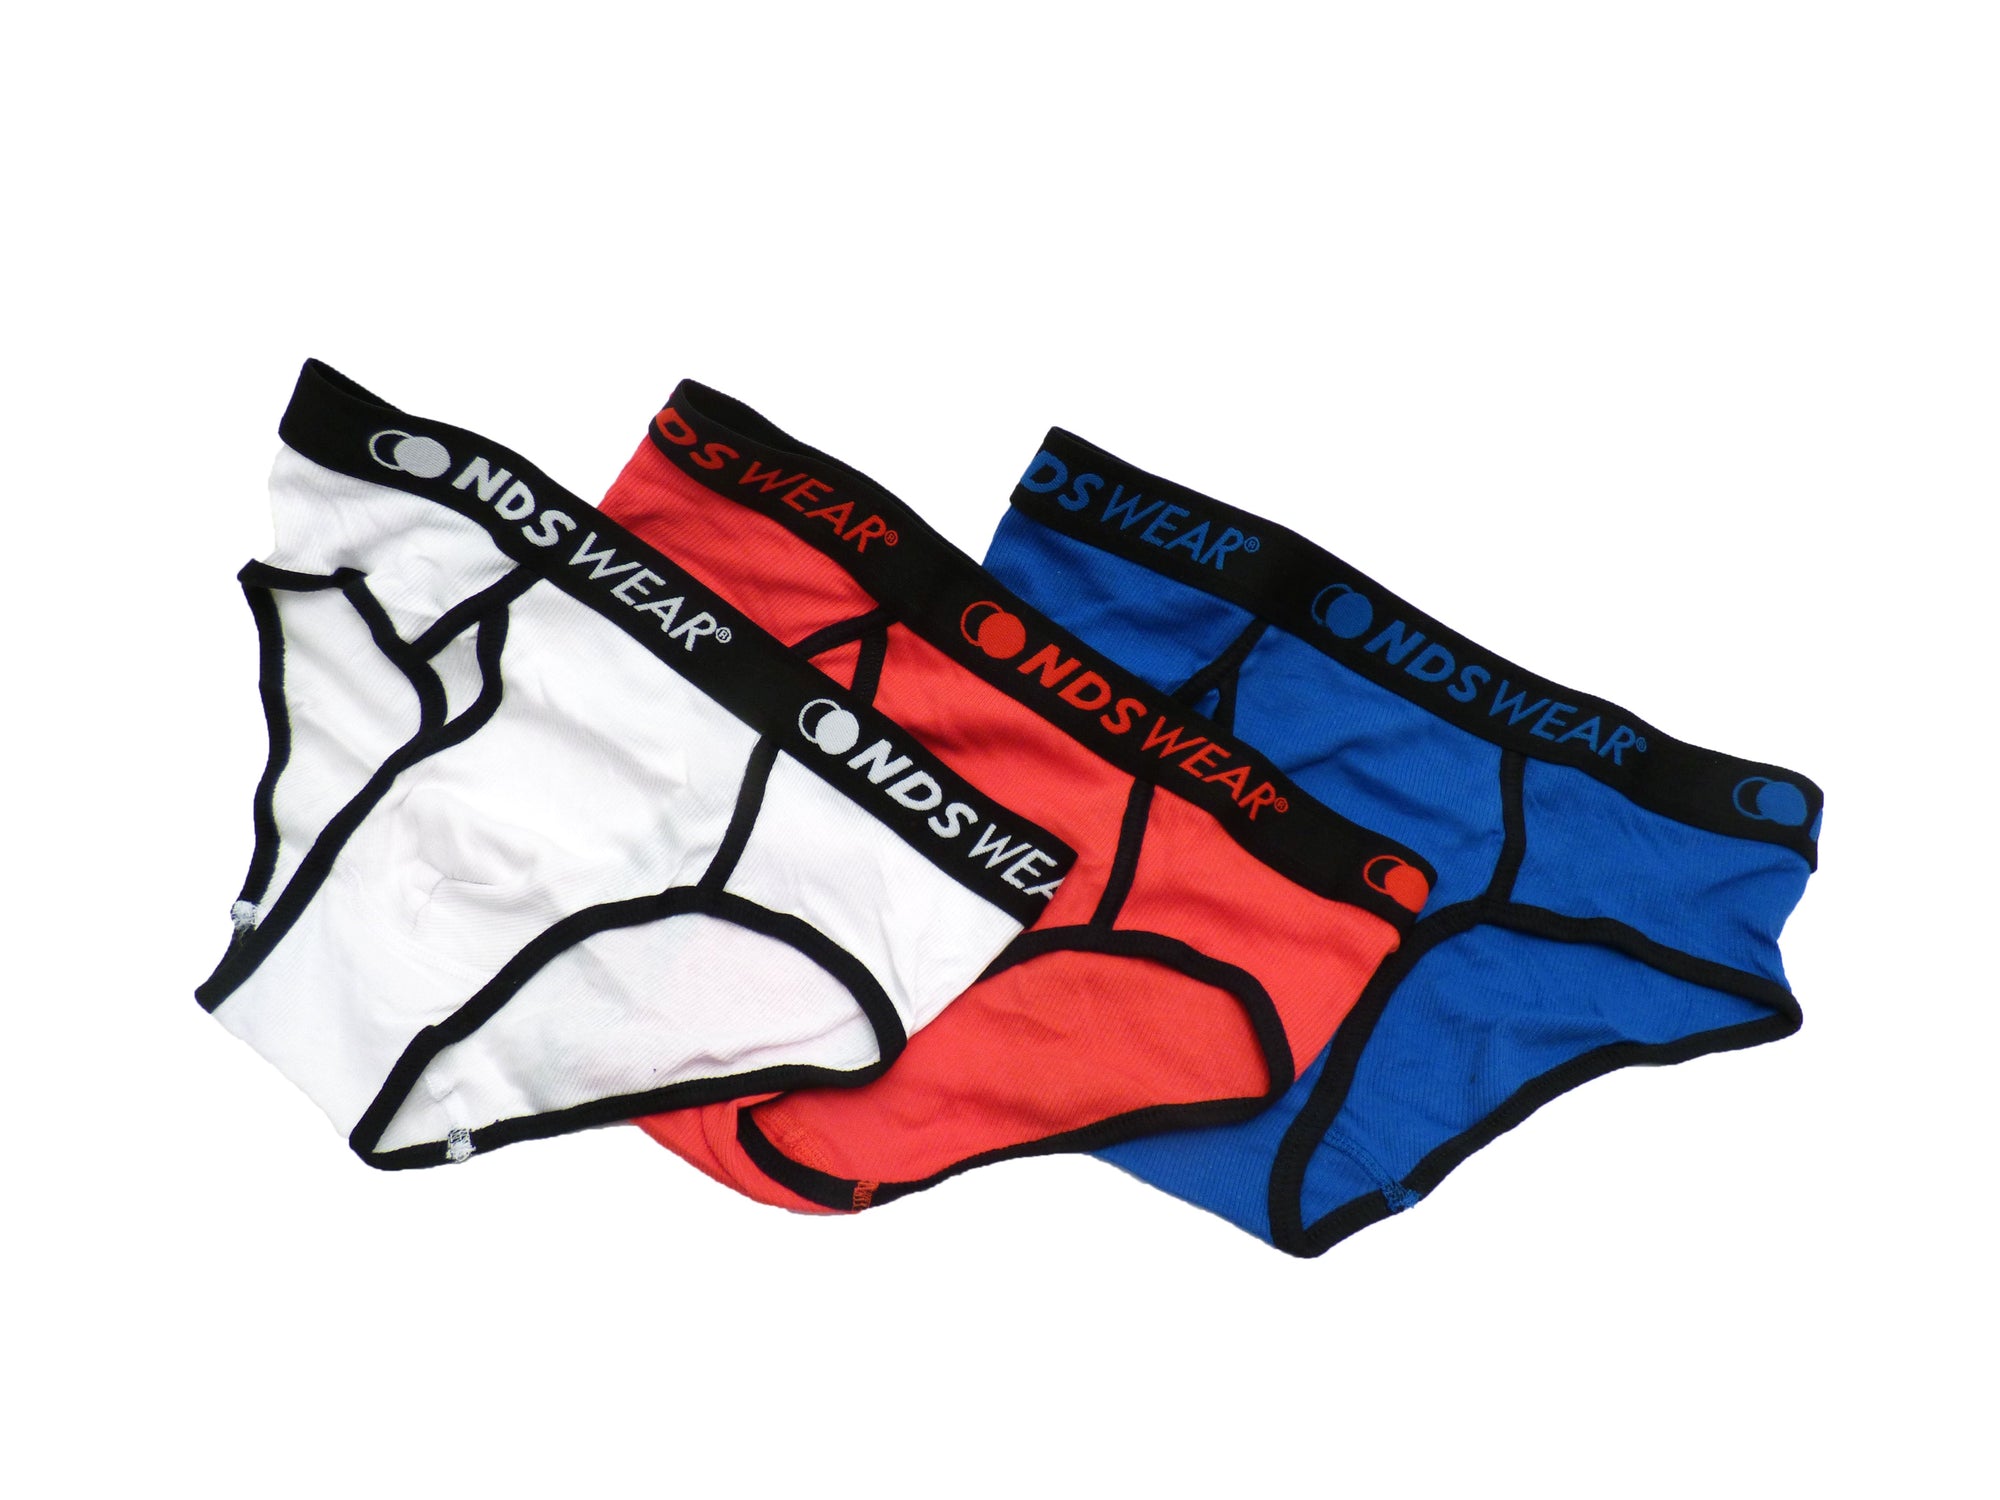 NDS Wear Sexy Pouch Brief - Men's Underwear - ABC Underwear